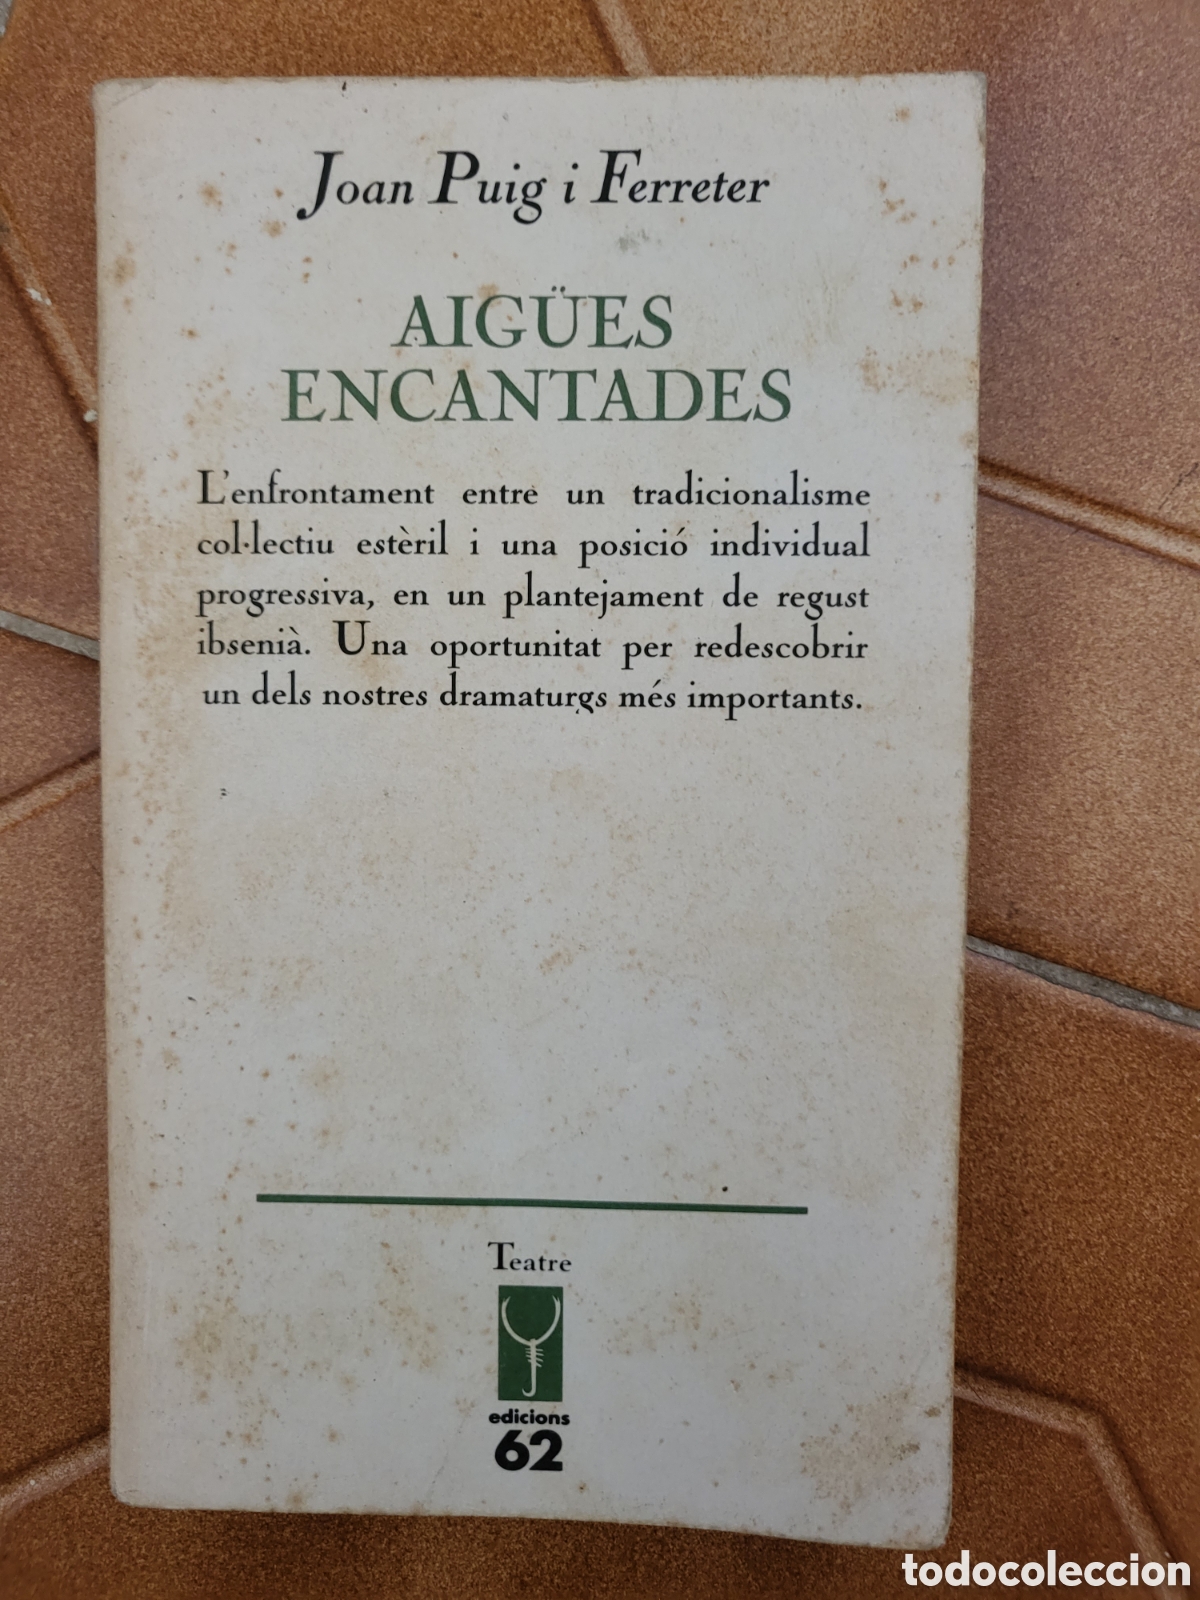 Aigues encantades - Joan Puig I Ferreter -5% en libros